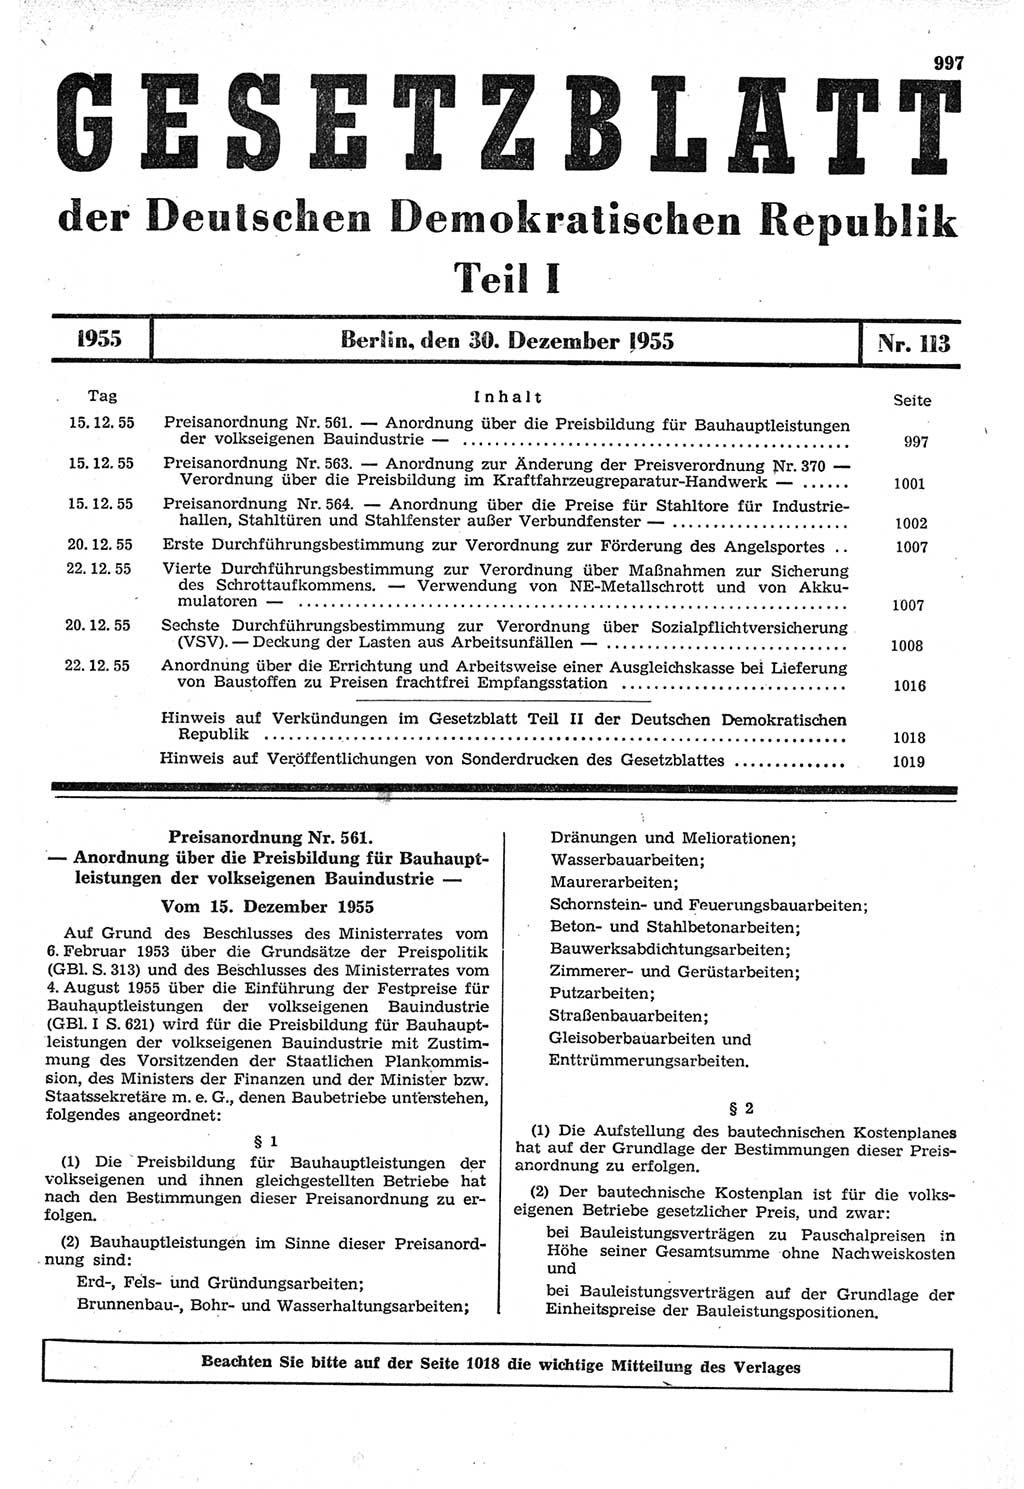 Gesetzblatt (GBl.) der Deutschen Demokratischen Republik (DDR) Teil Ⅰ 1955, Seite 997 (GBl. DDR Ⅰ 1955, S. 997)